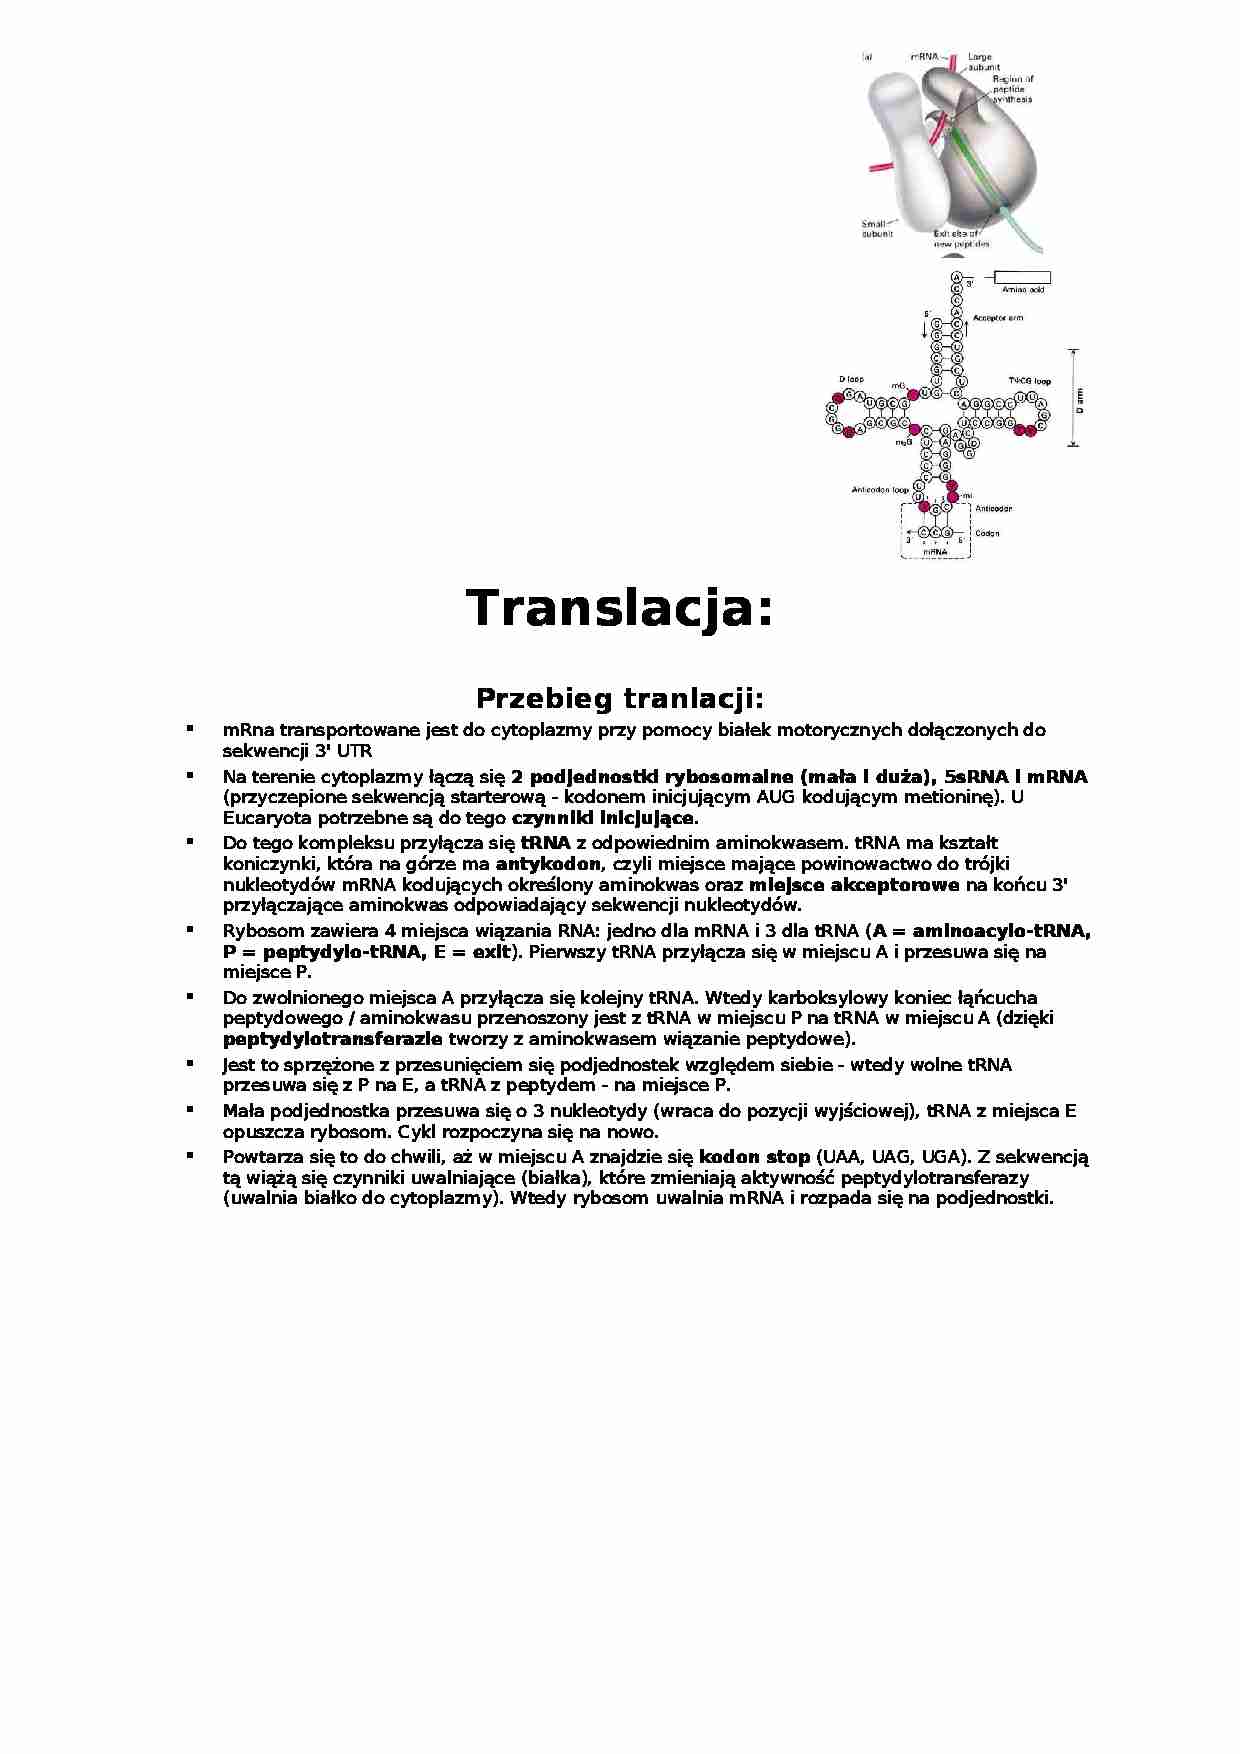 Translacja-opracowanie - strona 1